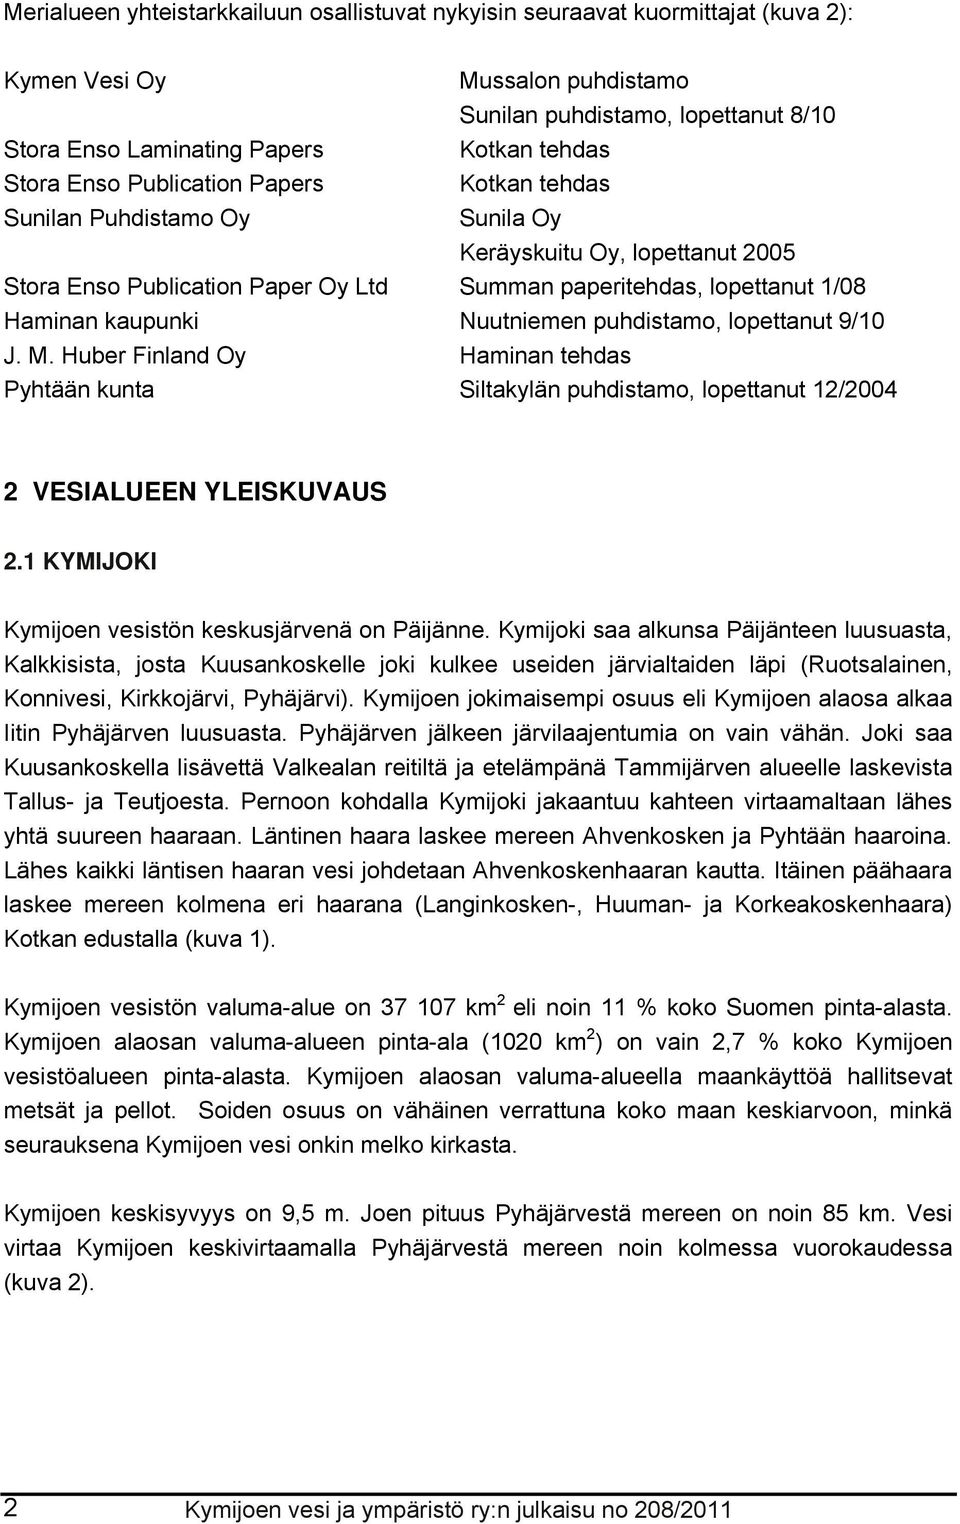 Nuutniemen puhdistamo, lopettanut 9/1 J. M. Huber Finland Oy Haminan tehdas Pyhtään kunta Siltakylän puhdistamo, lopettanut 12/24 2 VESIALUEEN YLEISKUVAUS 2.